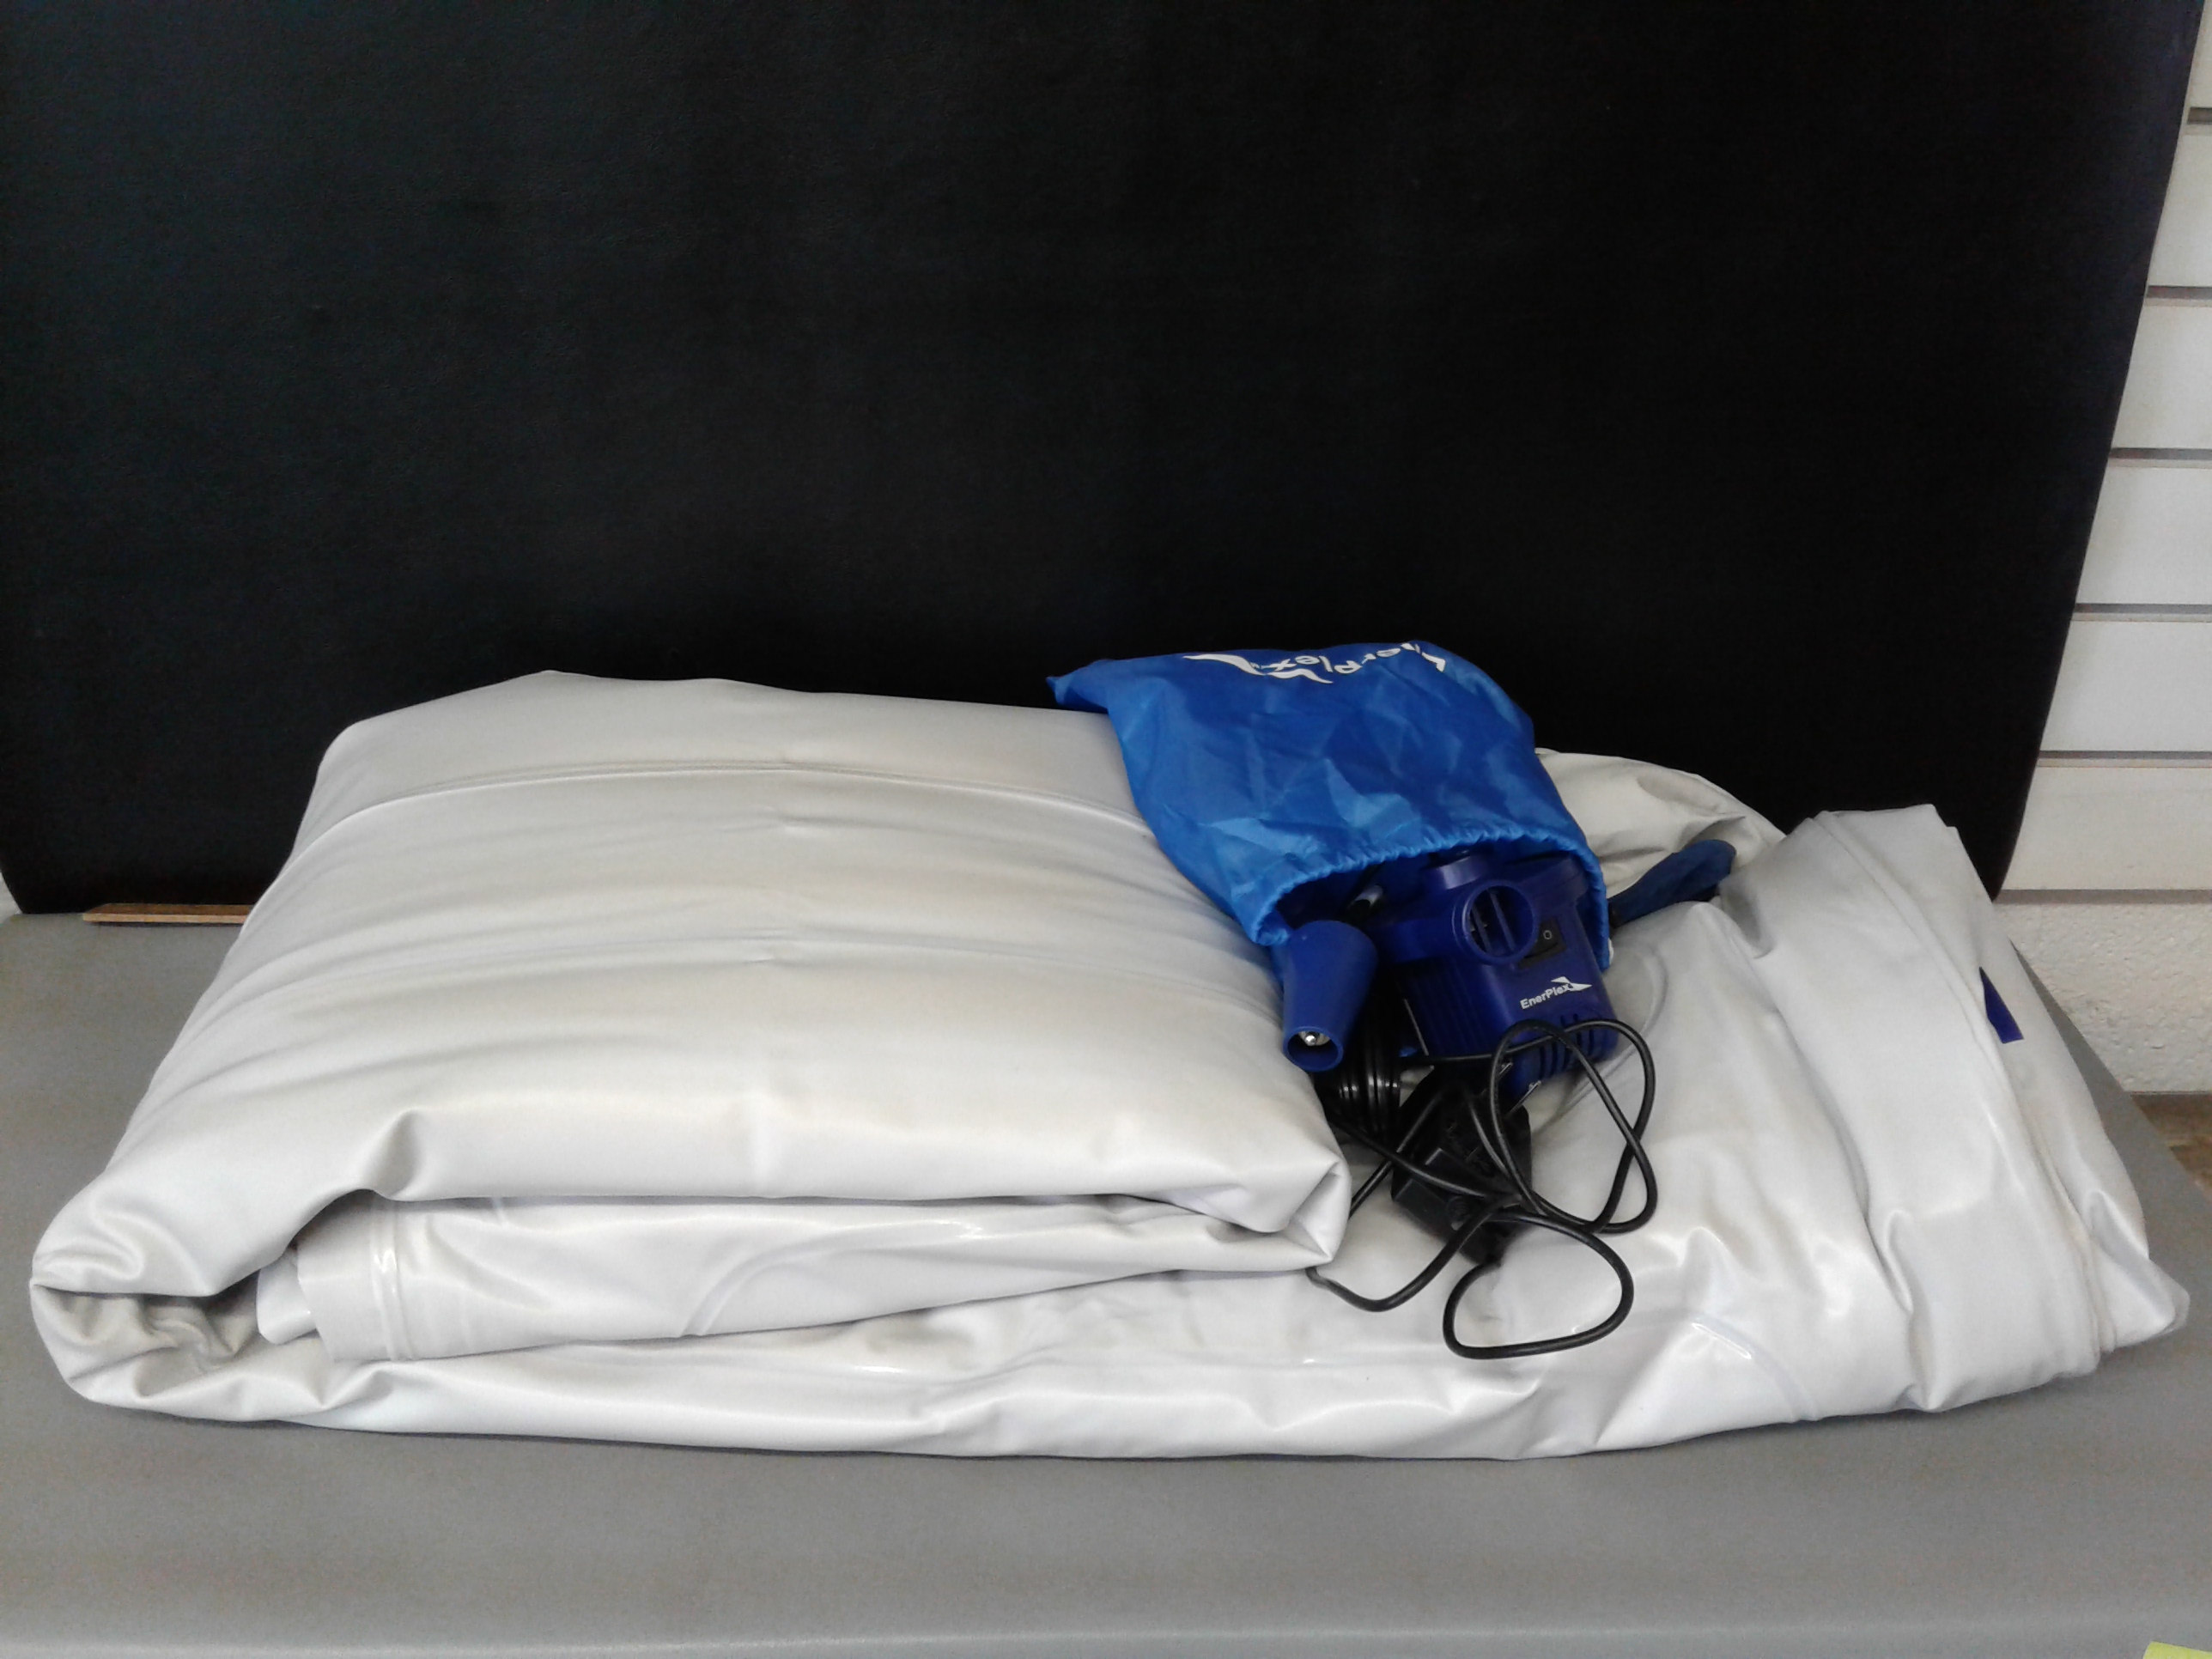 enerplex queen air mattress weight limit